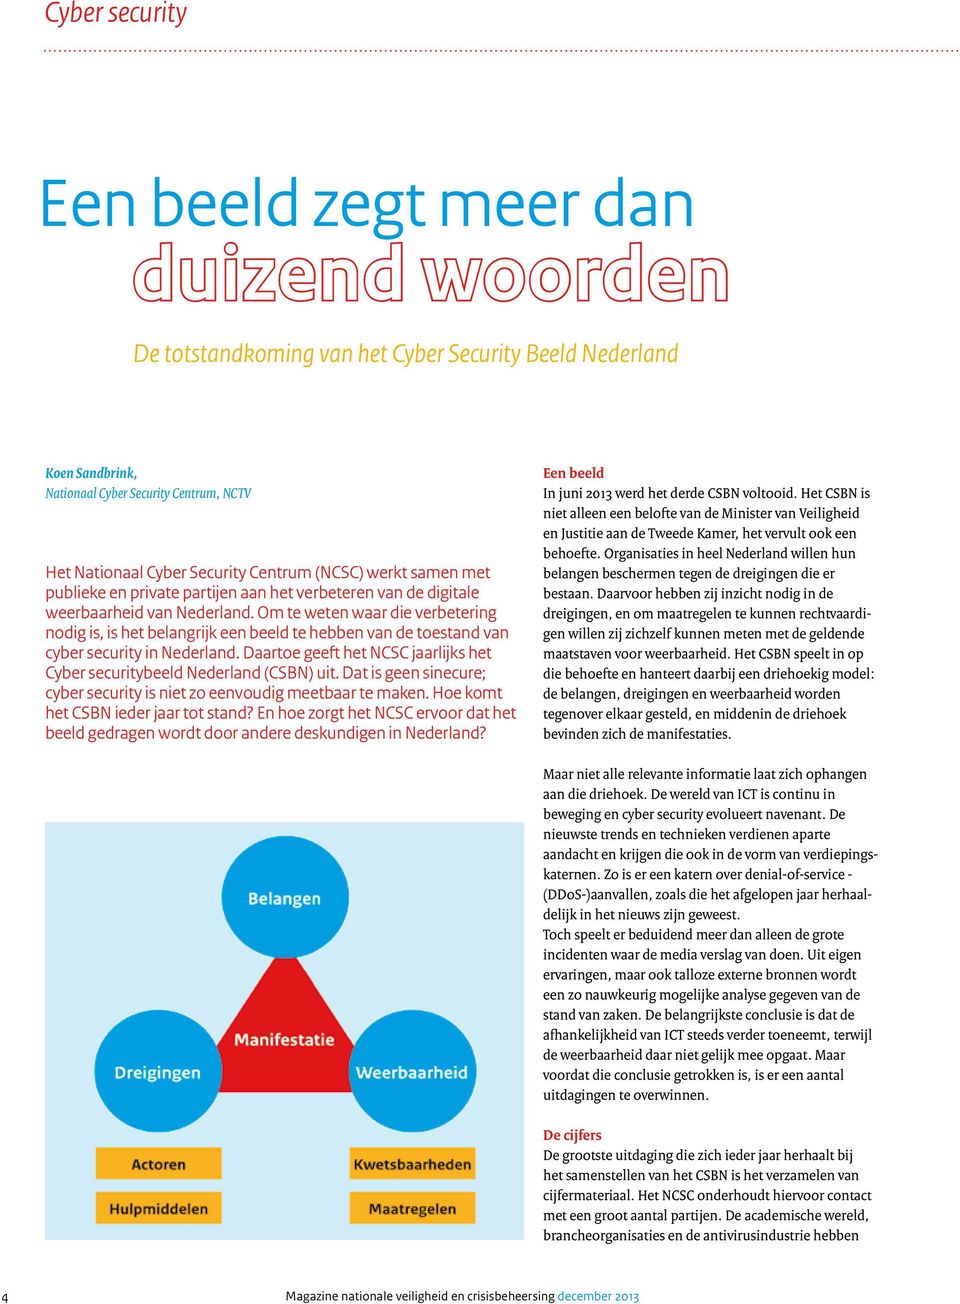 Om te weten waar die verbetering nodig is, is het belangrijk een beeld te hebben van de toestand van cyber security in Nederland.